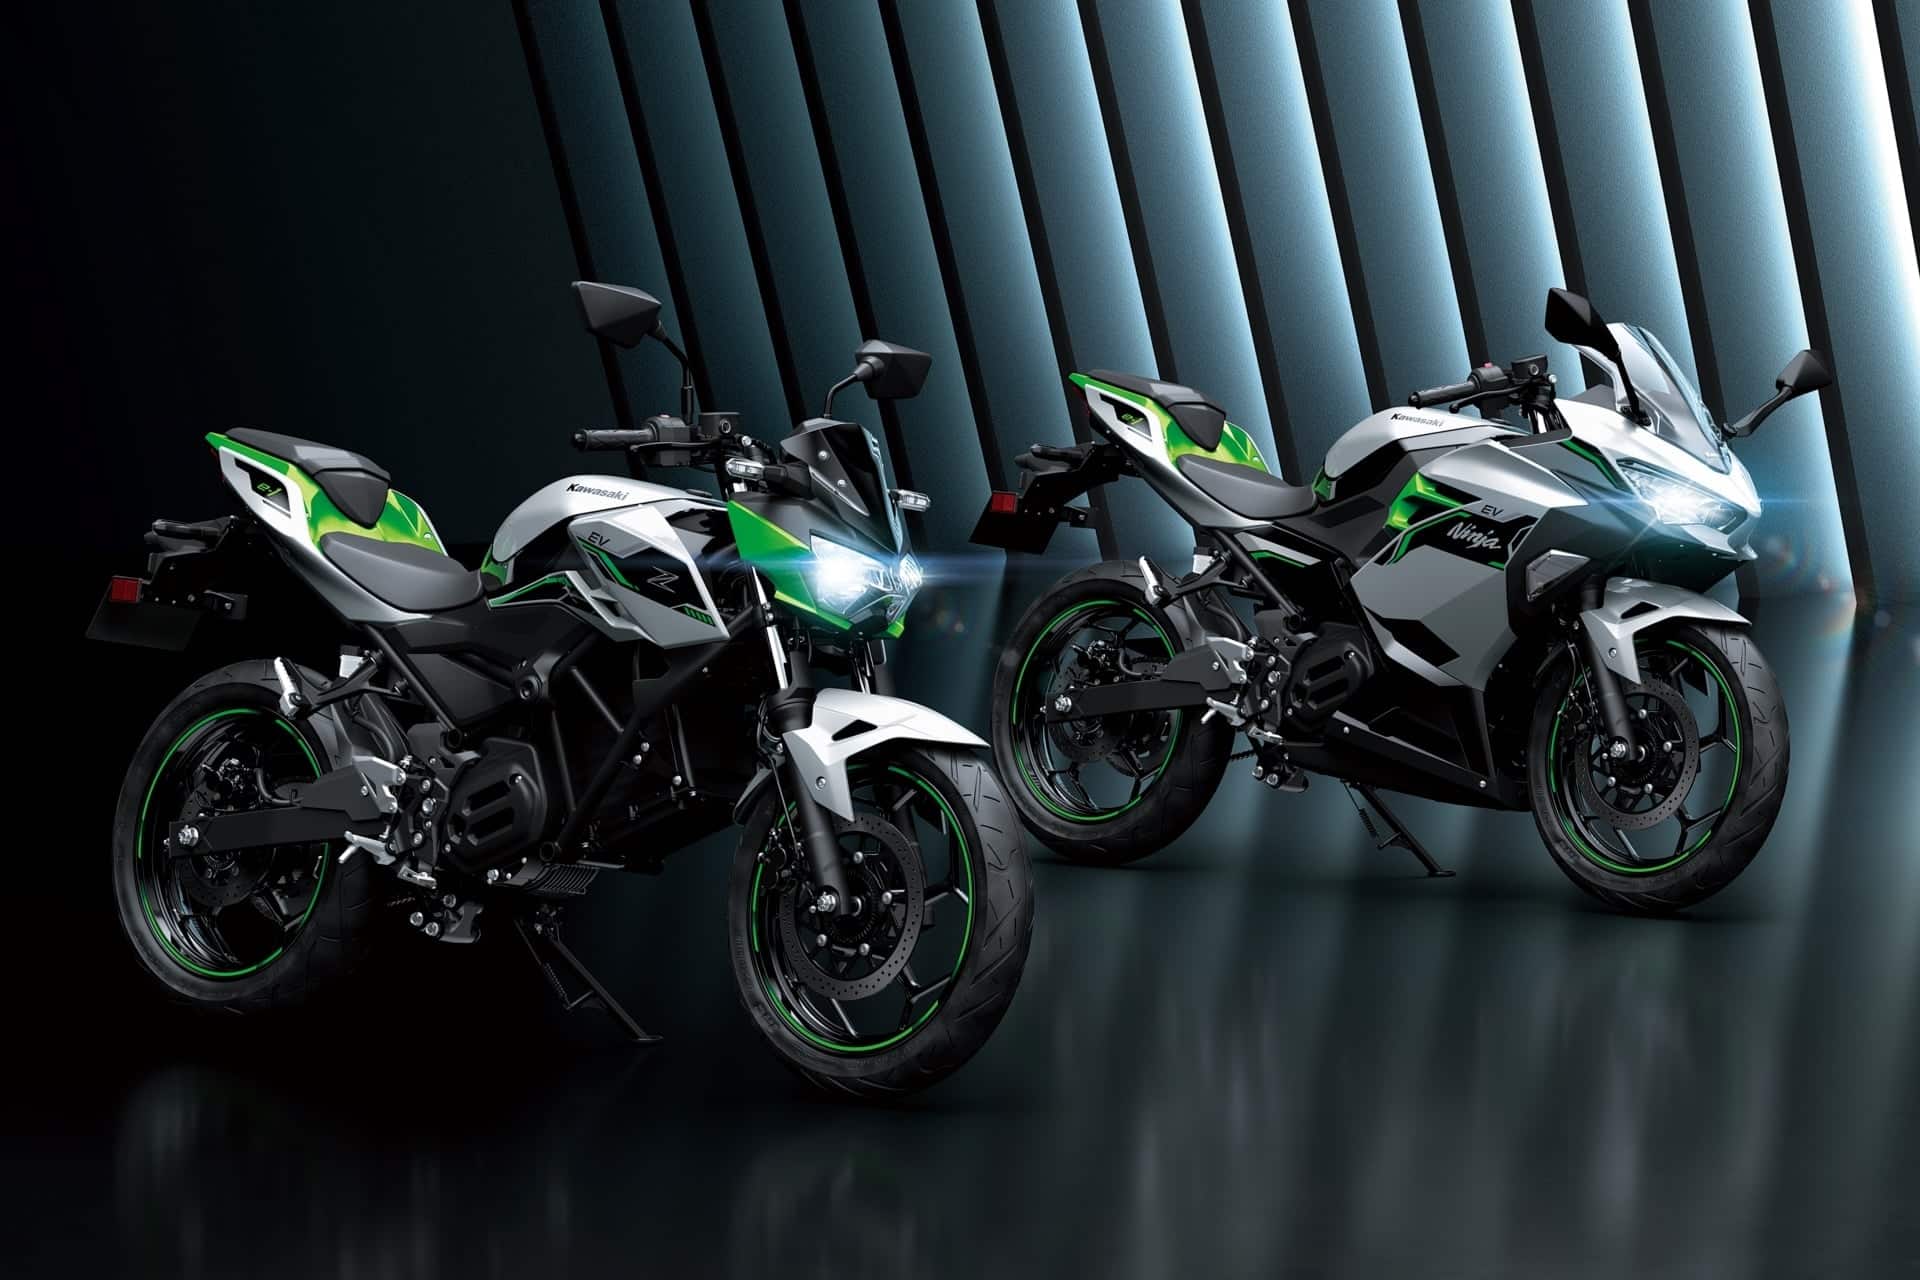 Forsee Power suministrará las baterías de las nuevas Kawasaki Ninja e-1 y Z e-1